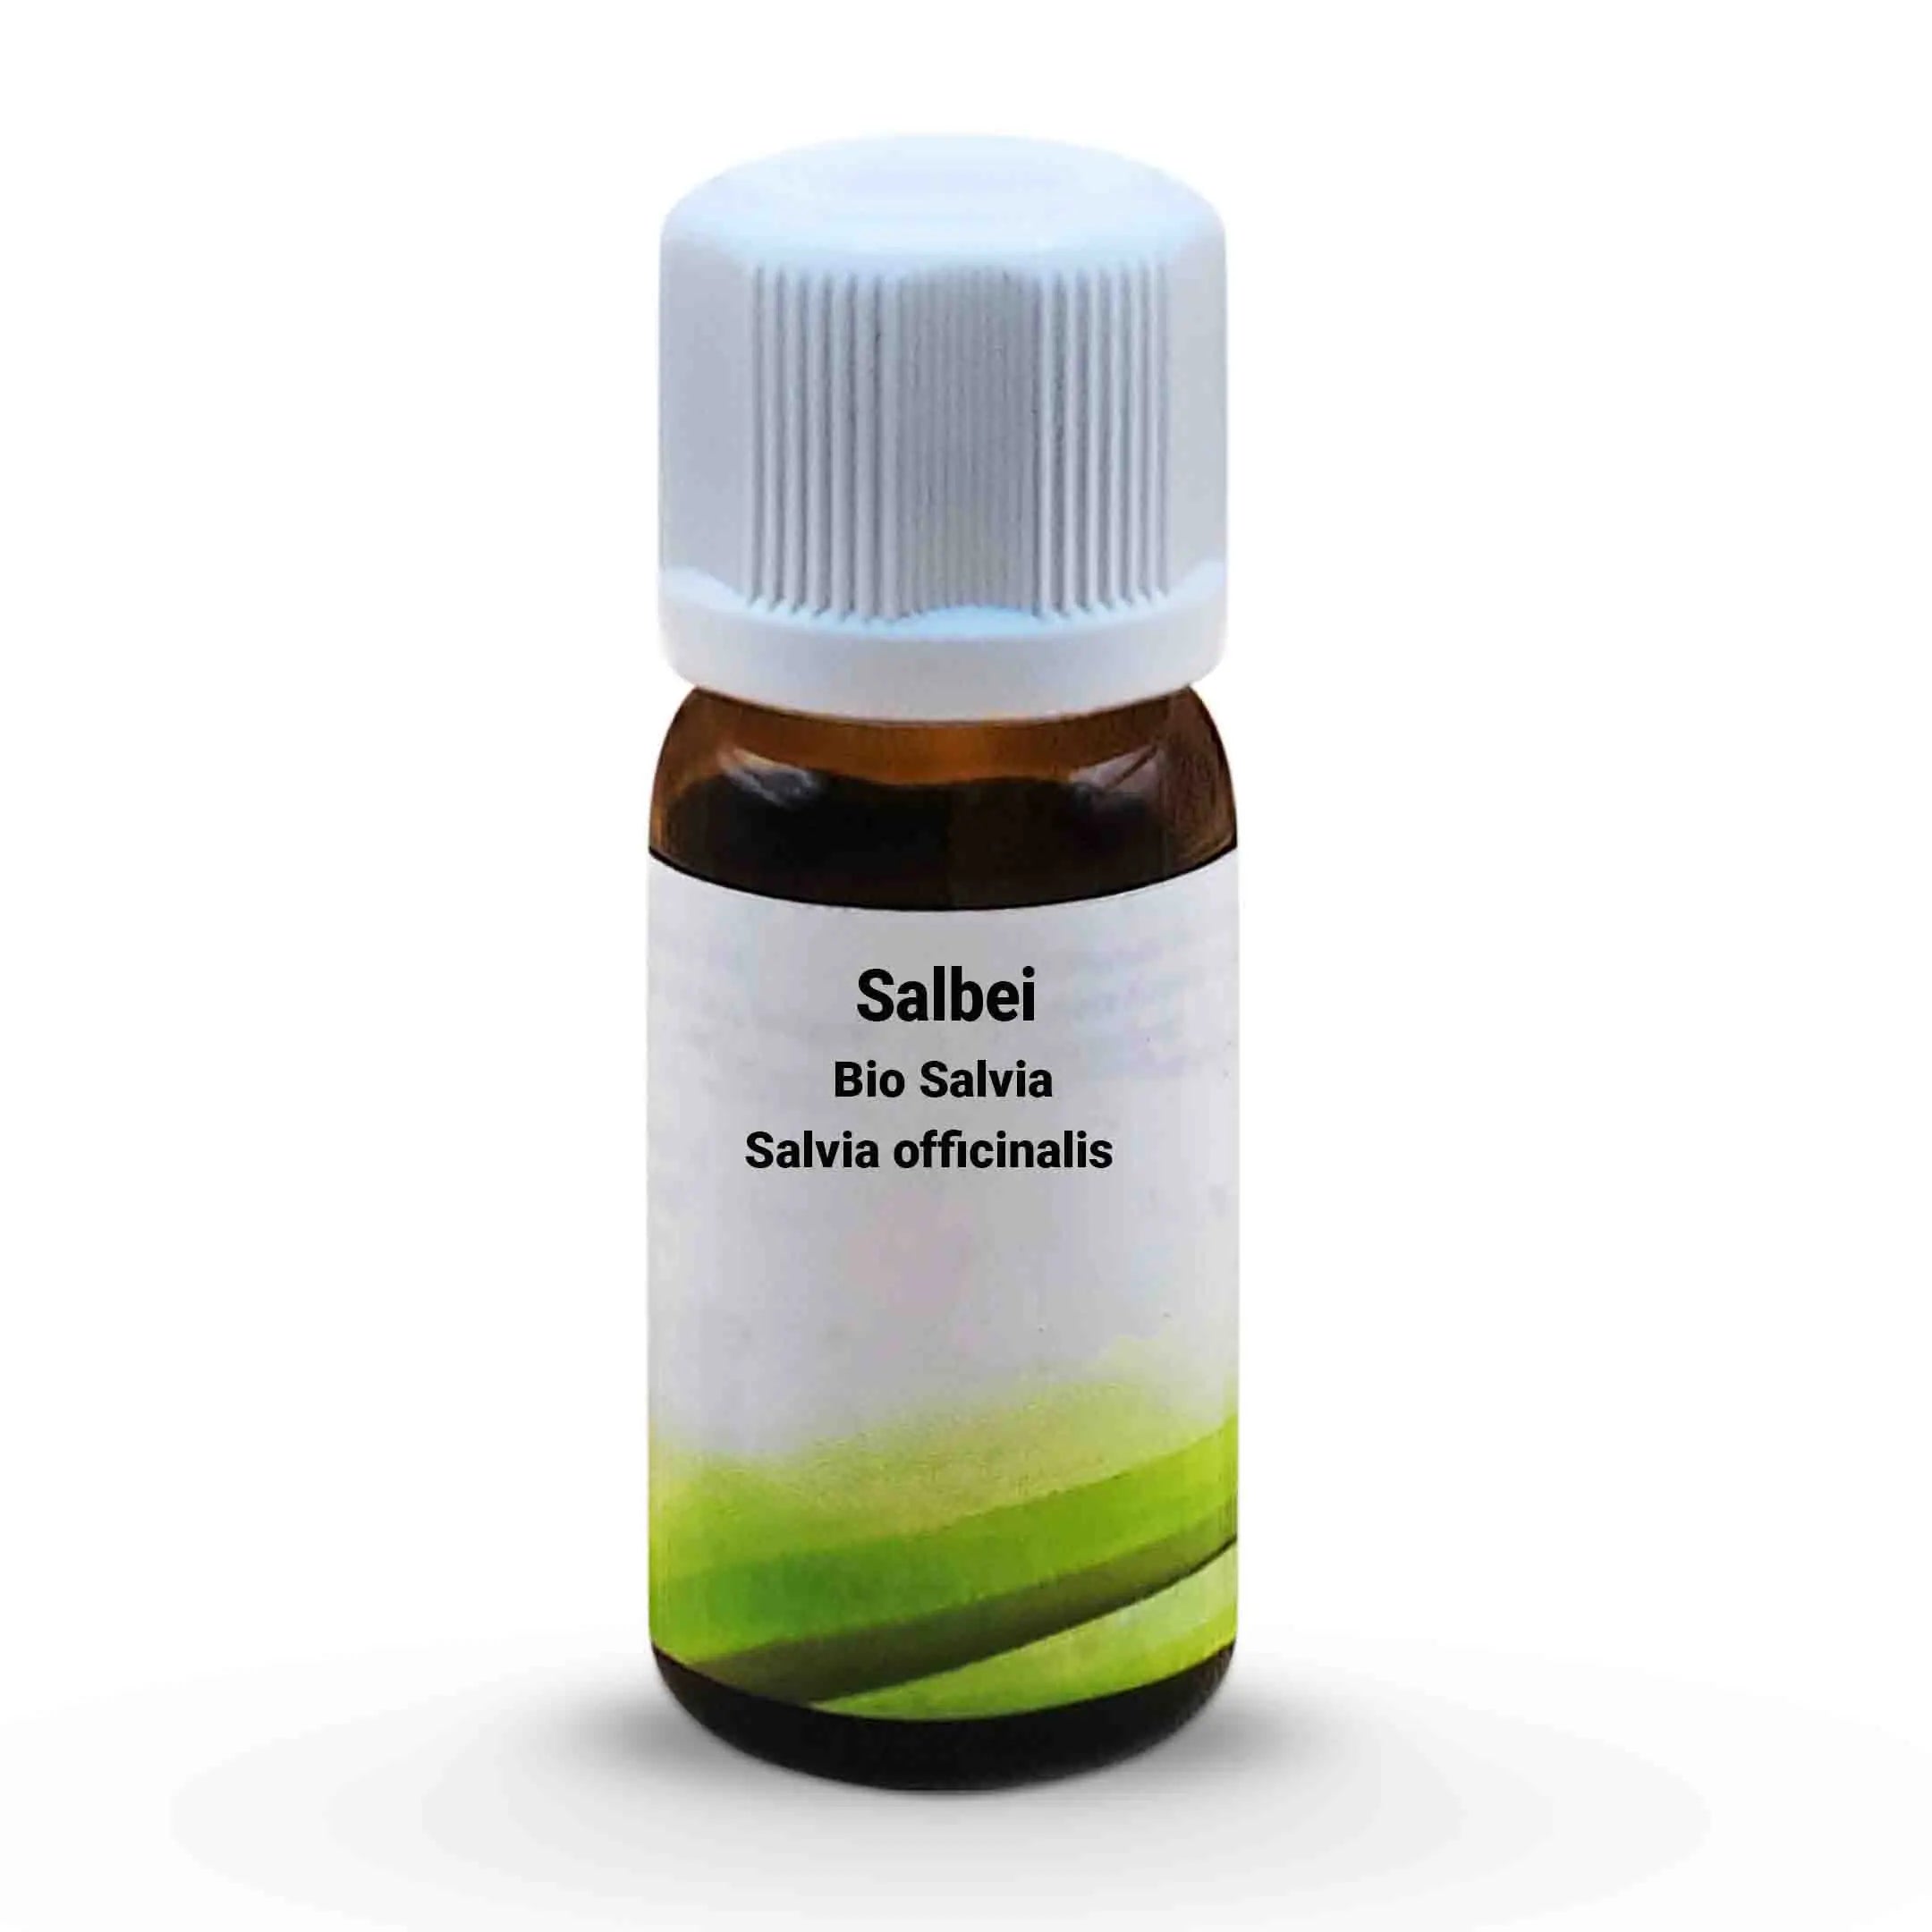 Salbei Bio Salvia - Salvia officinalis 10 ml